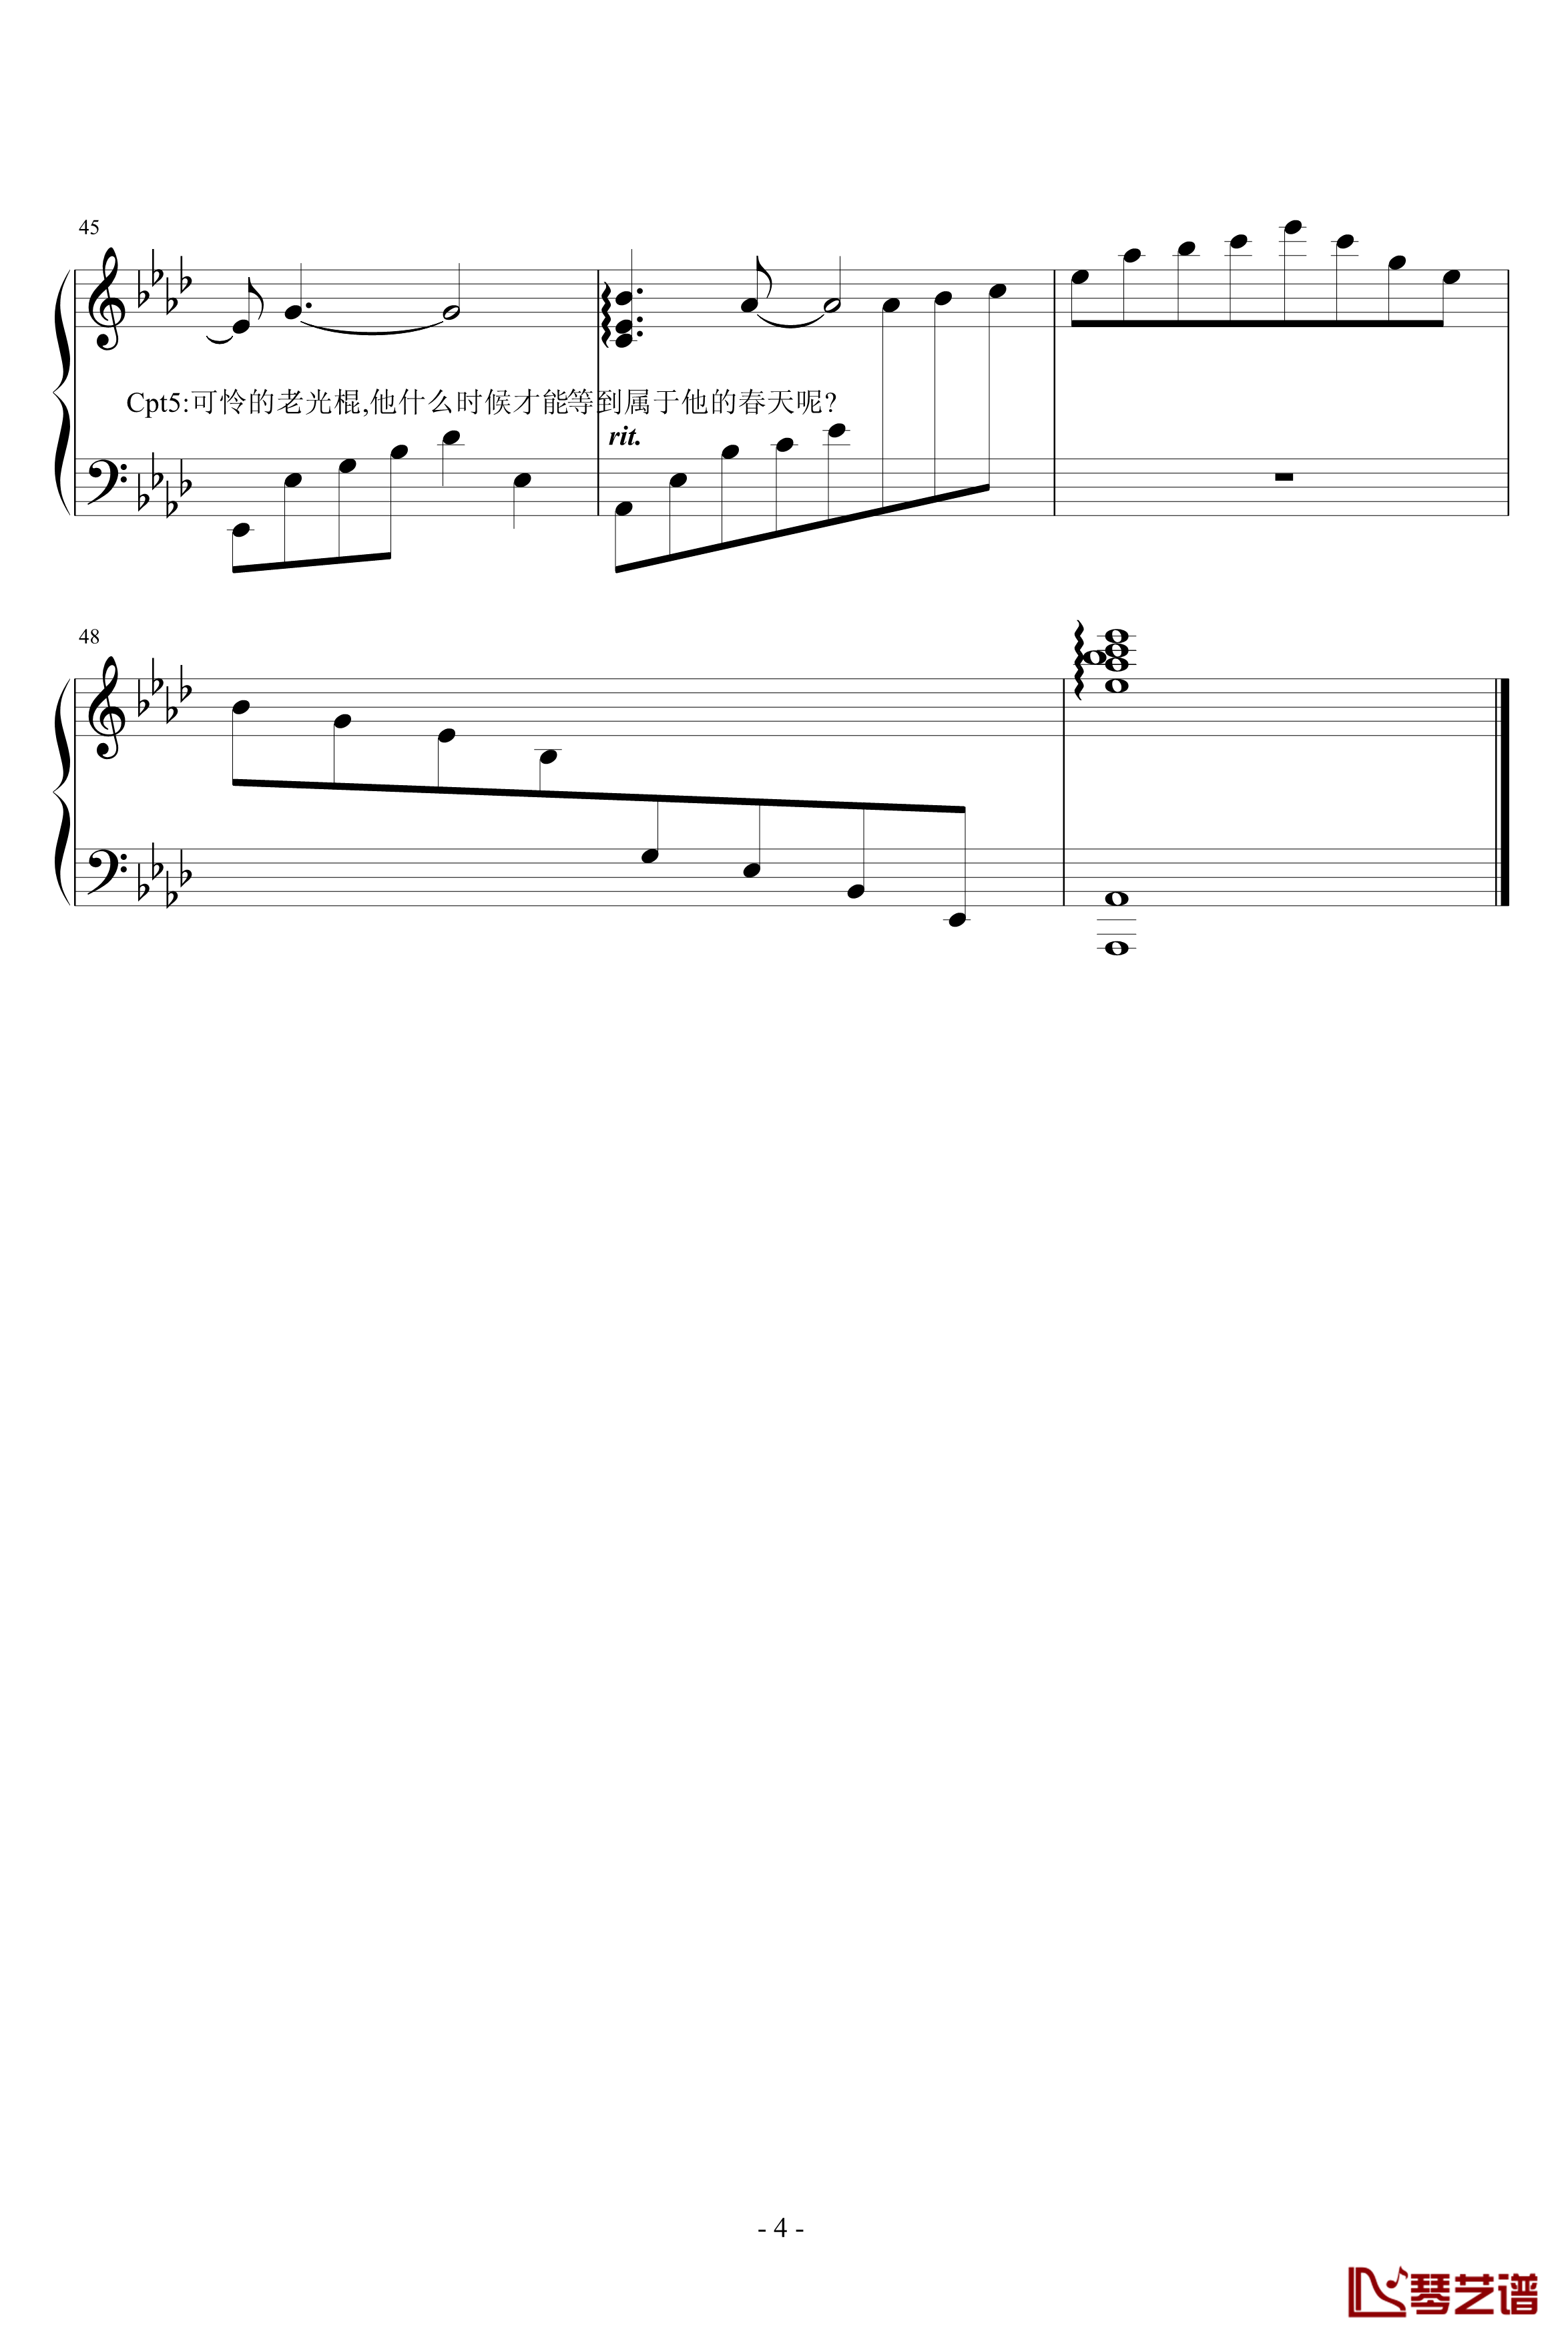 老光棍的愿钢琴谱-光棍组曲vol.2-钢琴叫兽4